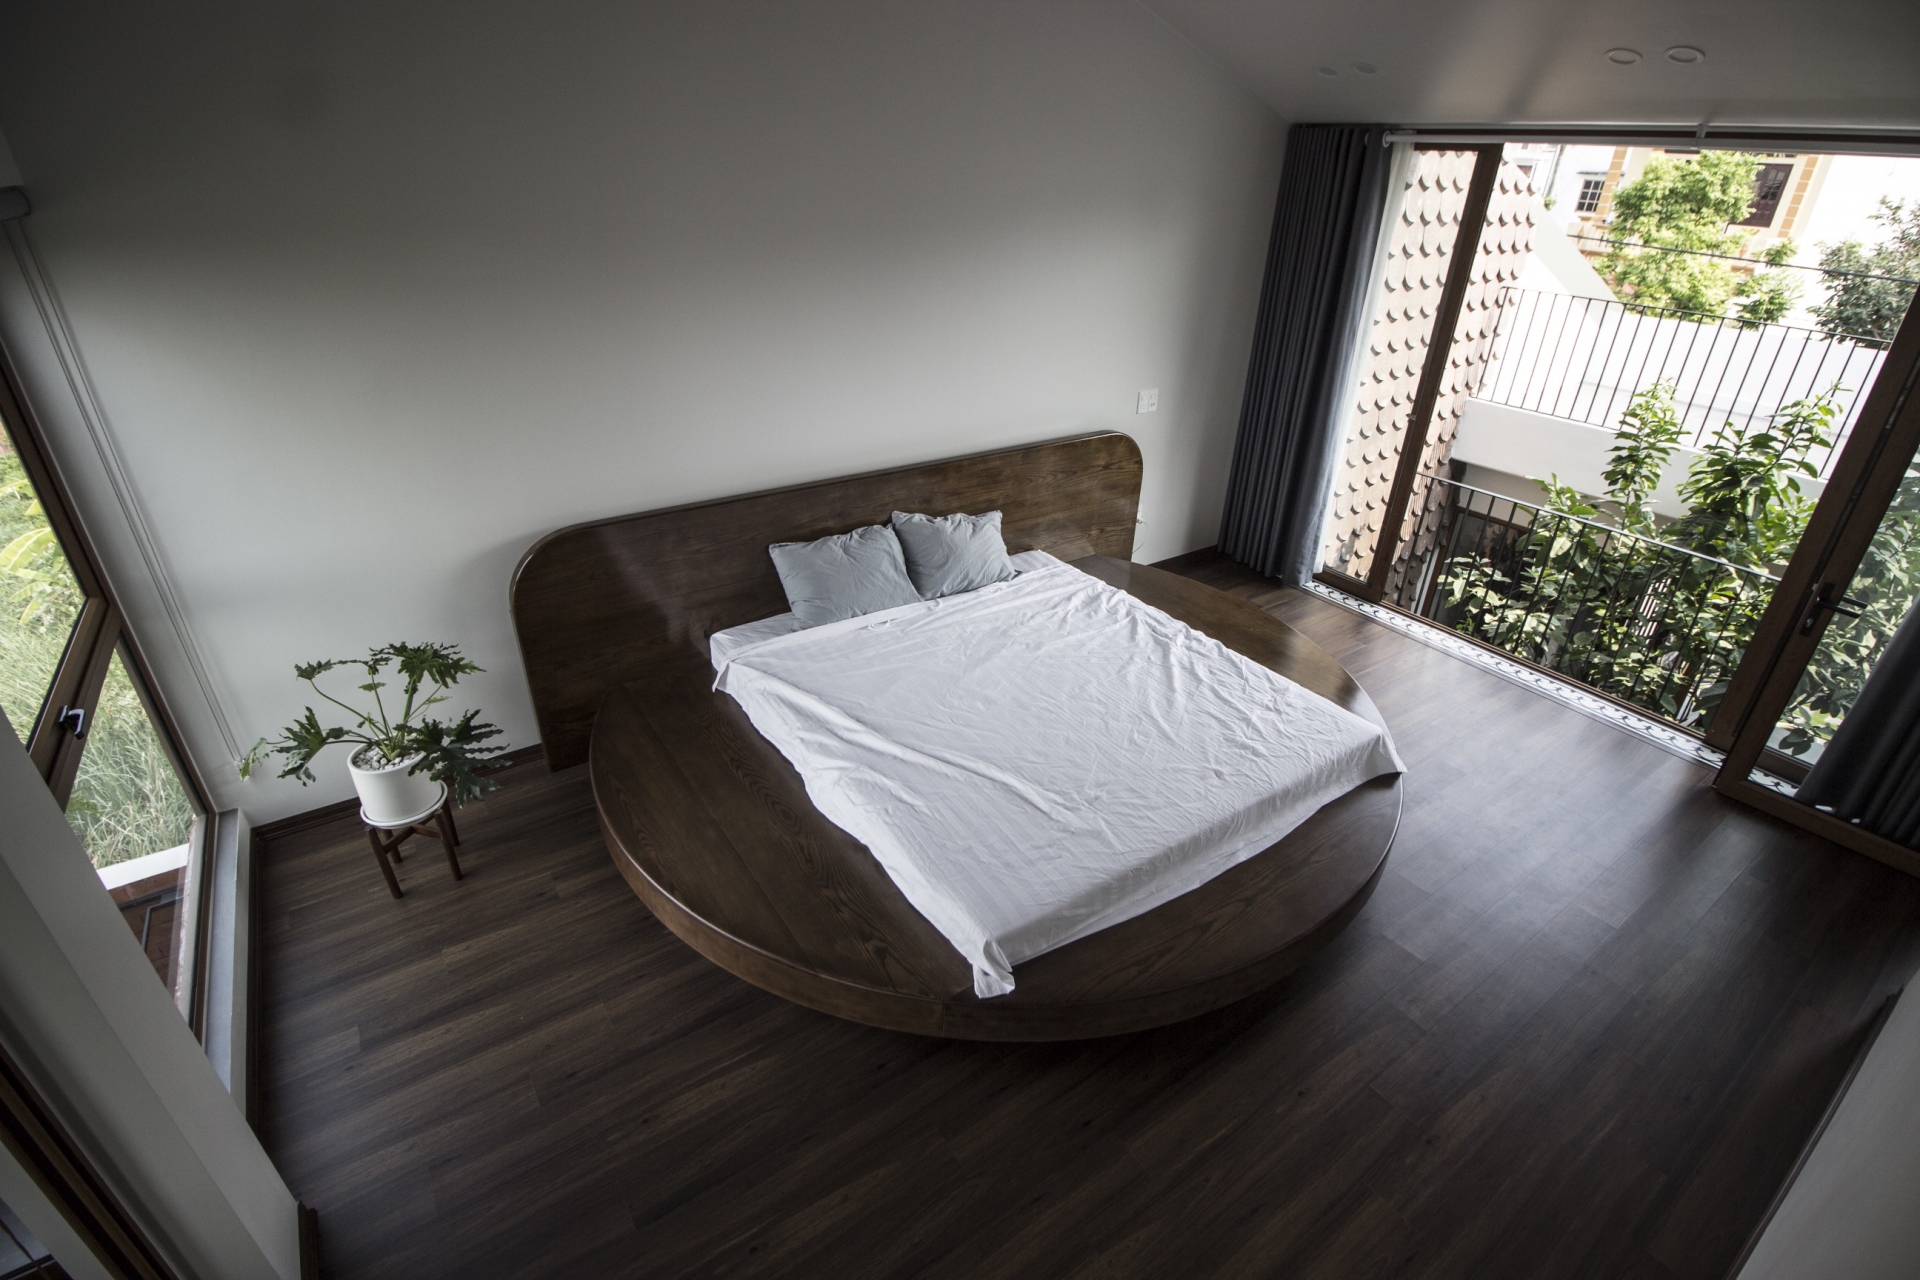 Phòng ngủ tối giản với chiếc giường tròn bằng gỗ đa năng: Vừa là giường, vừa là ghế ngồi xem tivi, kiêm cả chức năng của táp đầu giường tiện lợi.